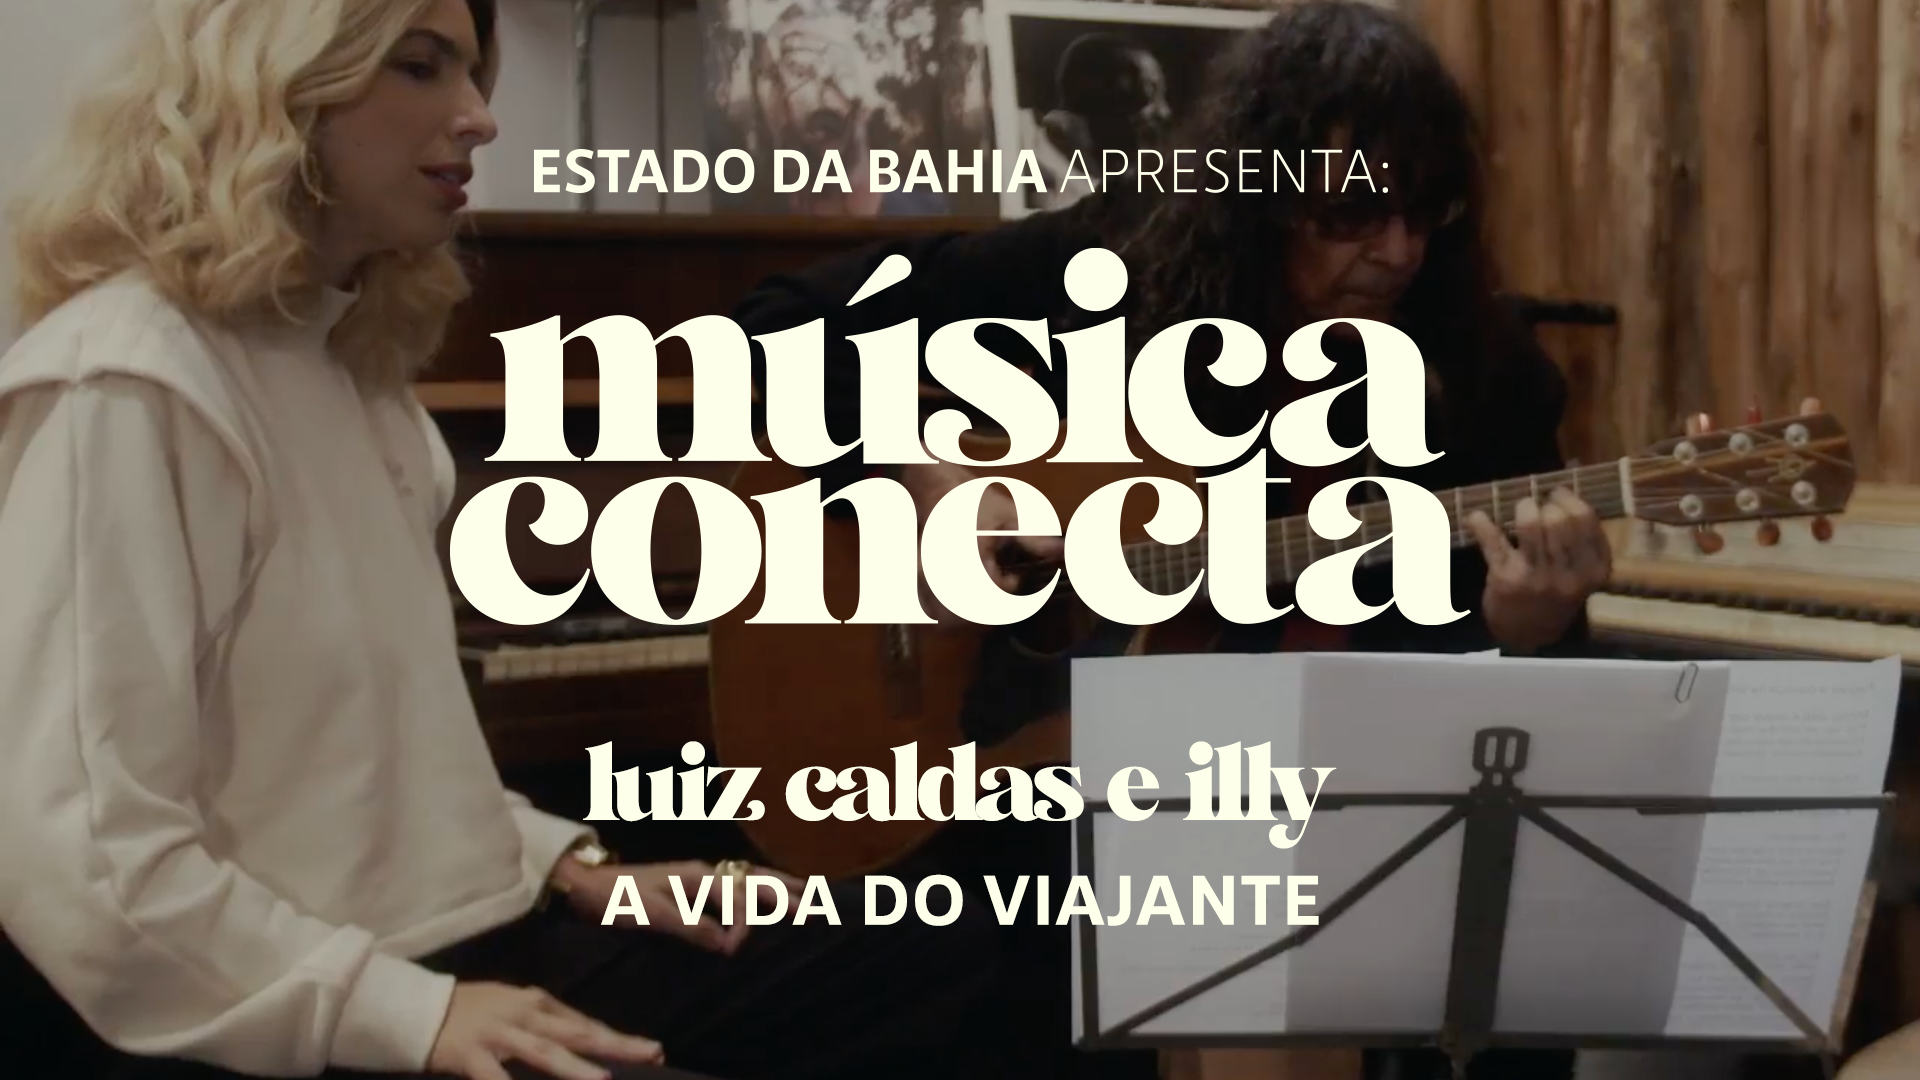 DEVASSA e Musica Conecta – "A Vida do Viajante" de Luiz Gonzaga - Illy e Luiz Caldas